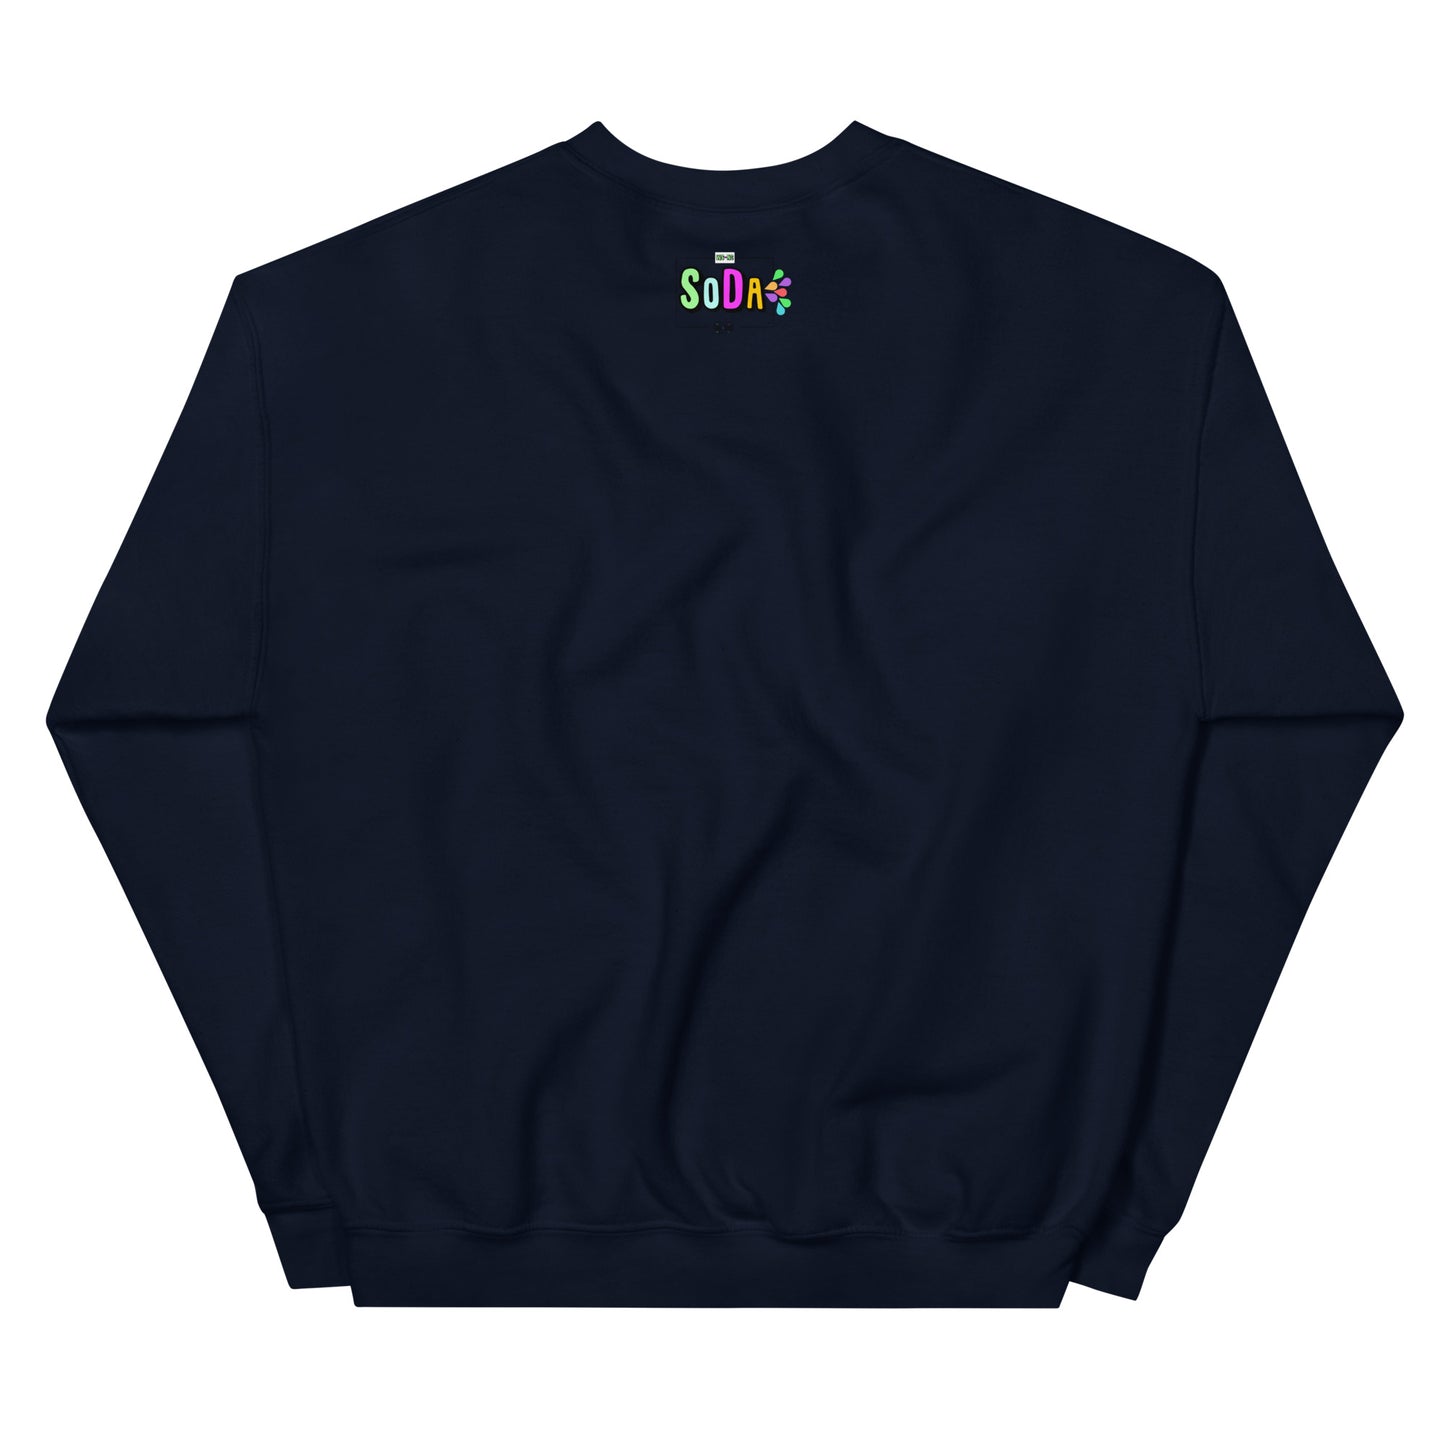 Unisex Blueberry Mango Sweatshirt